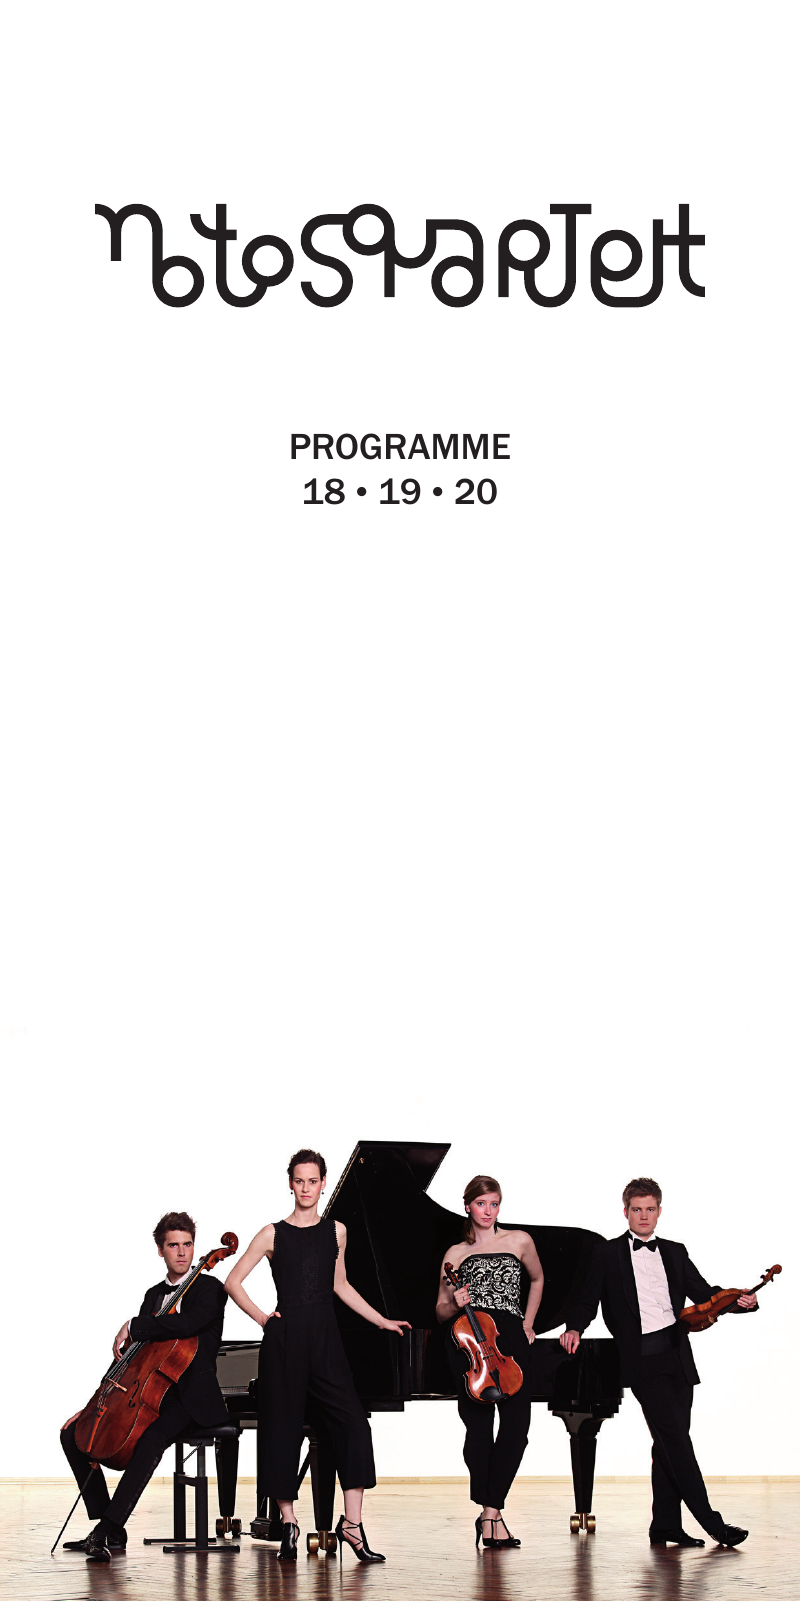 Vorschau Notos Quartett Programme 18/19/20 Seite 1